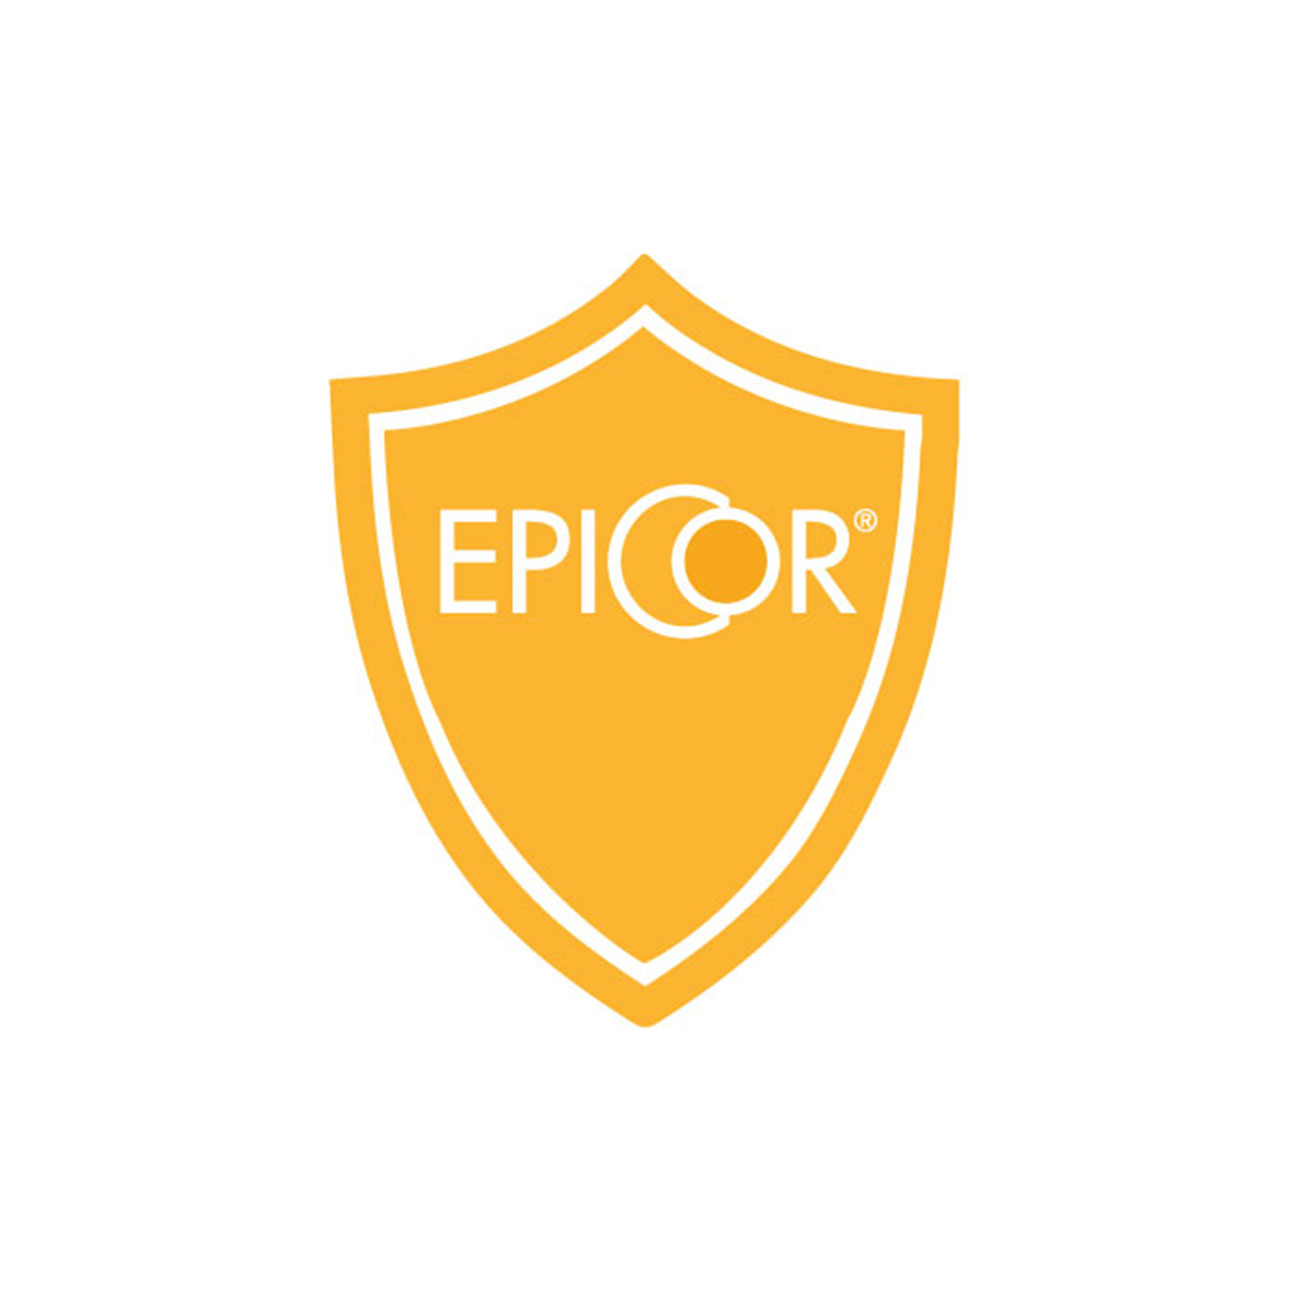 EpiCor® - Inhaltsstoff eines Vollwert-Nahrungsergänzungsmittels, das klinisch nachgewiesen das Immunsystem unterstützt - Logo